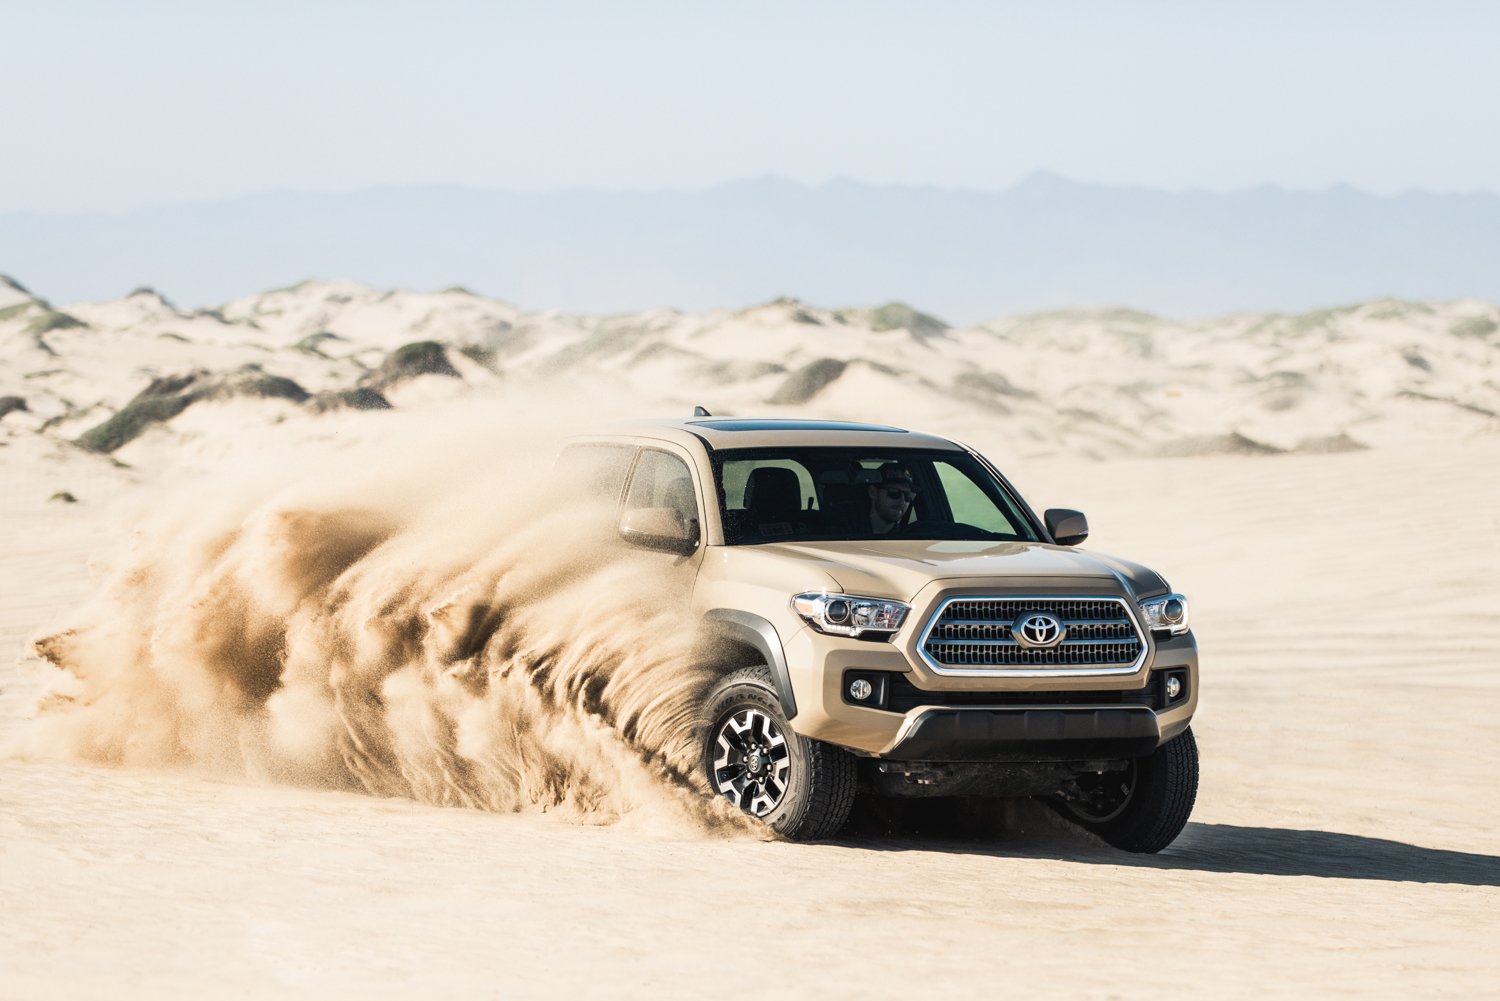 The Toyota Tacoma driving through the desert by Mark Skovorodko.